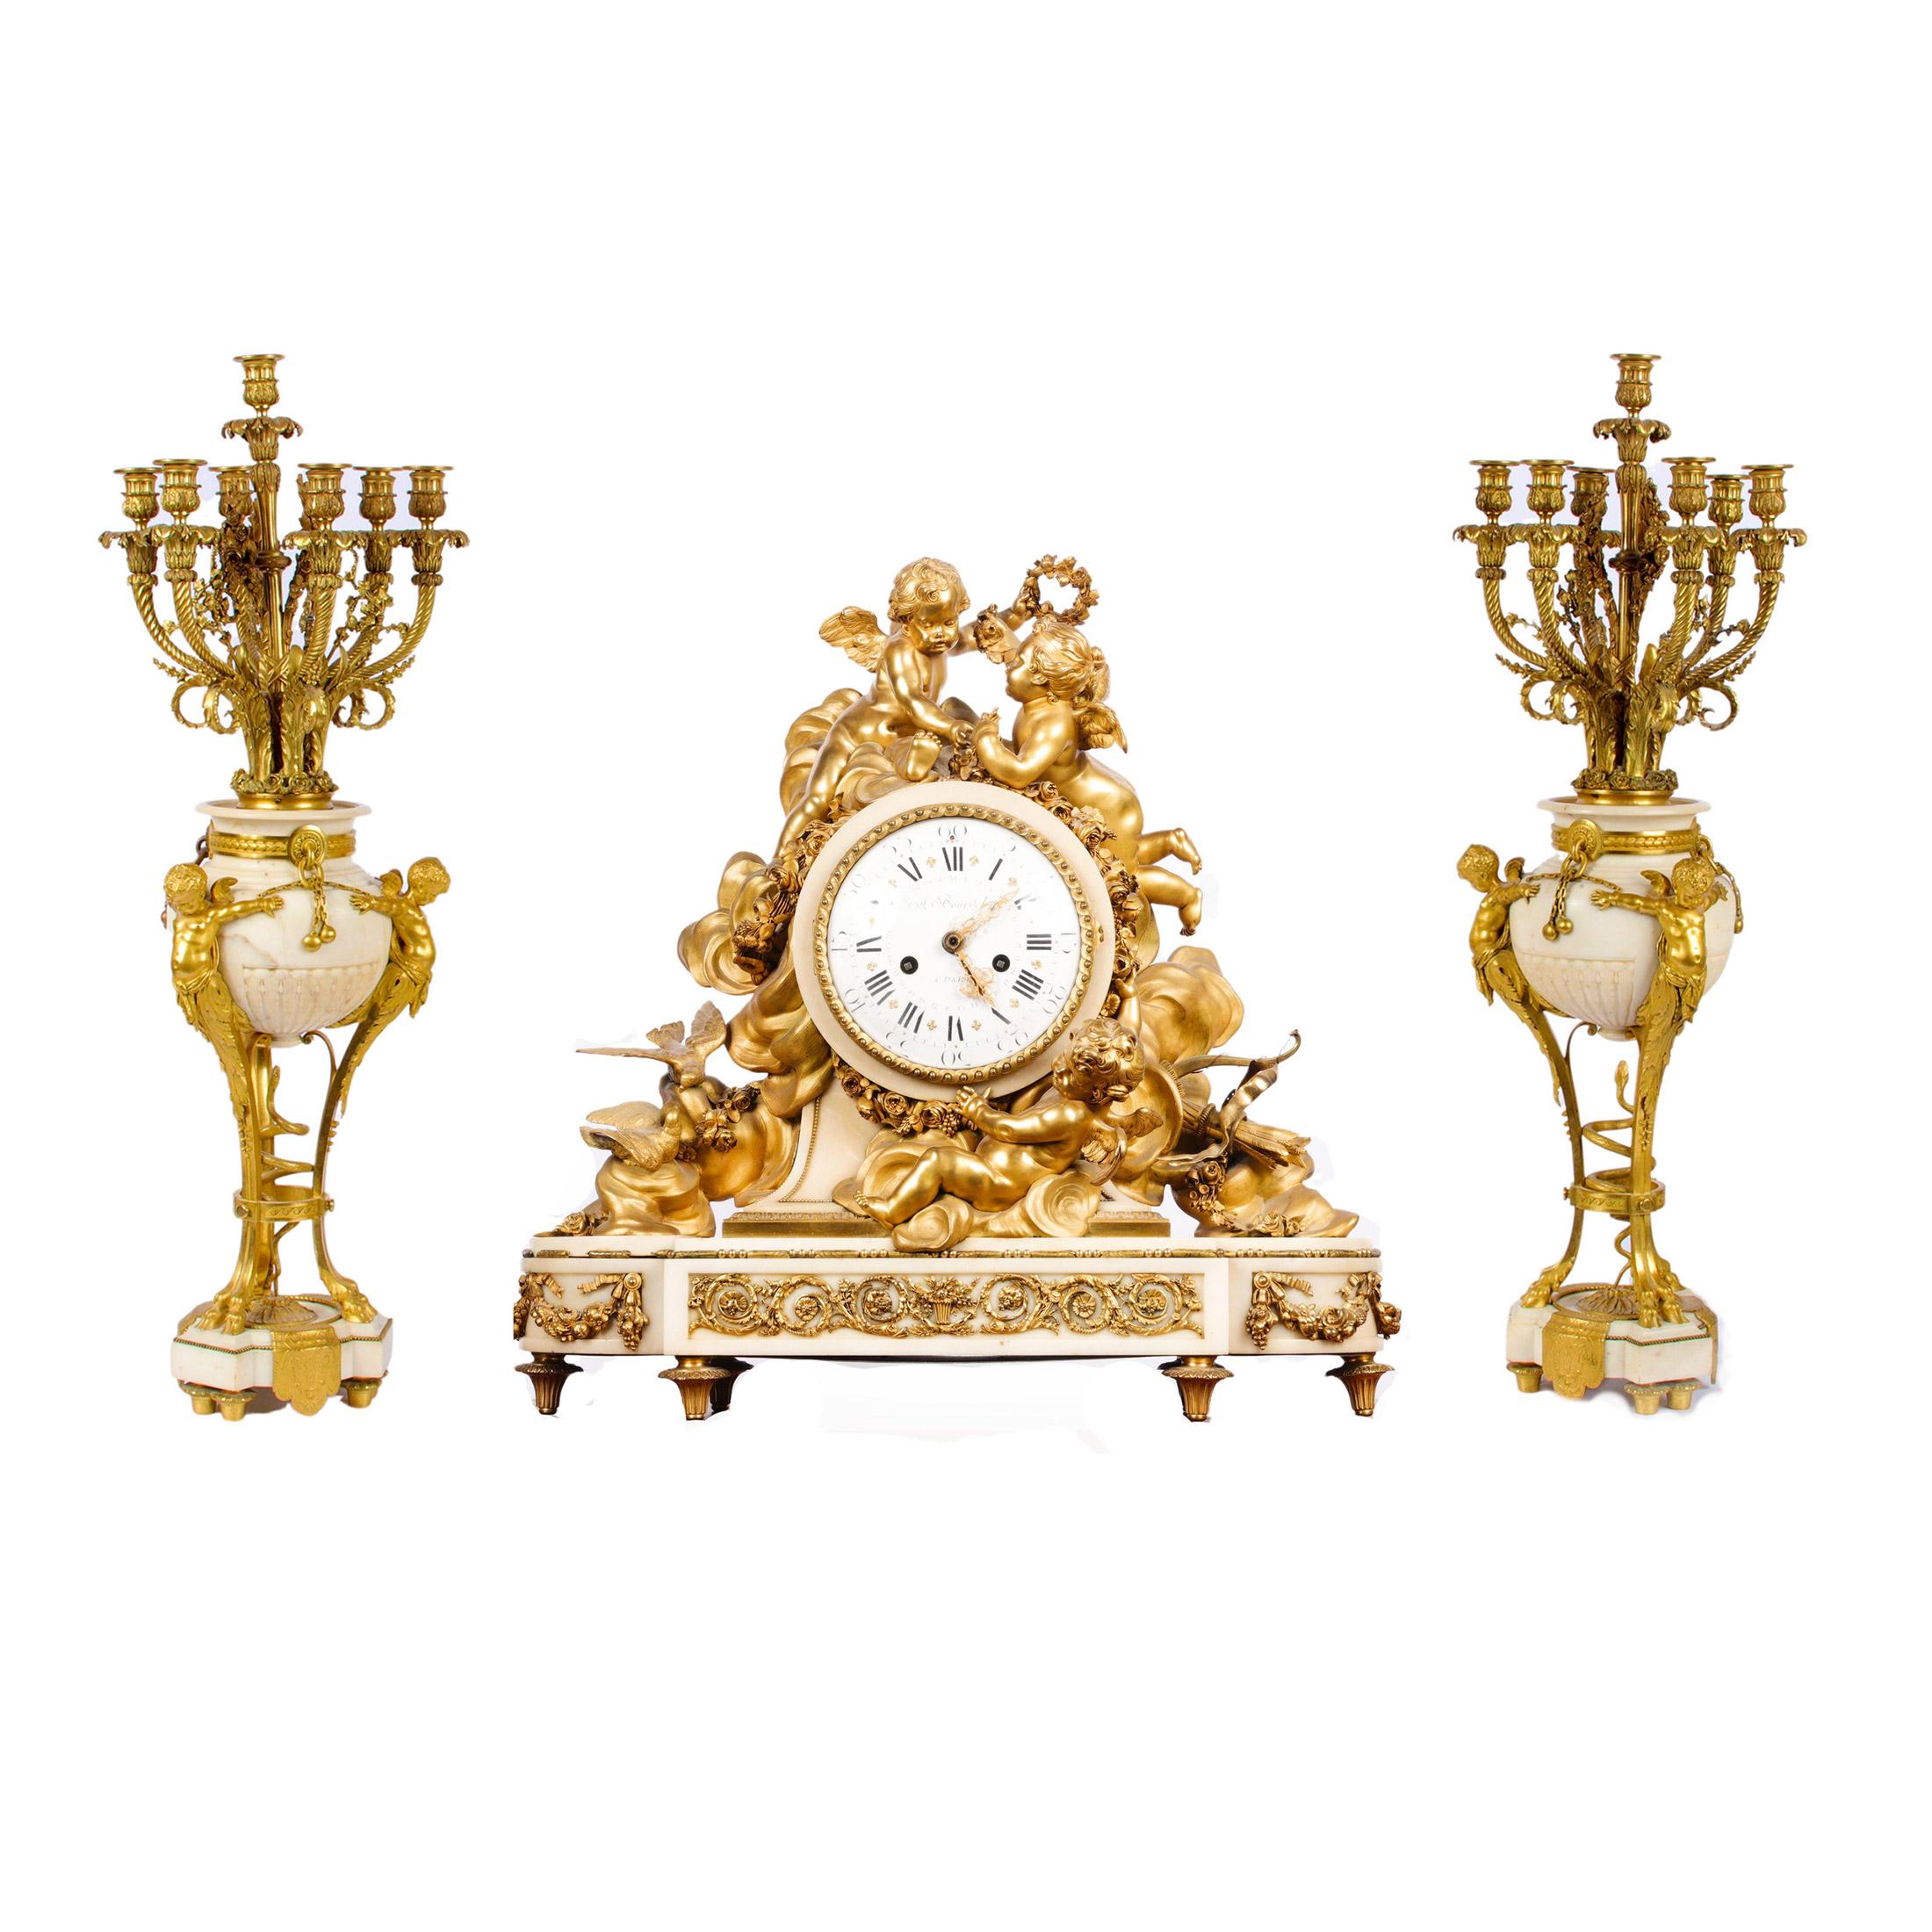 Importante pendule en bronze doré de style Louis XVI par Beurdeley

Une grande pendule de cheminée en bronze doré et marbre blanc rococo de style Louis XVI est surmontée de trois putti en bronze doré suspendant des guirlandes florales parmi des